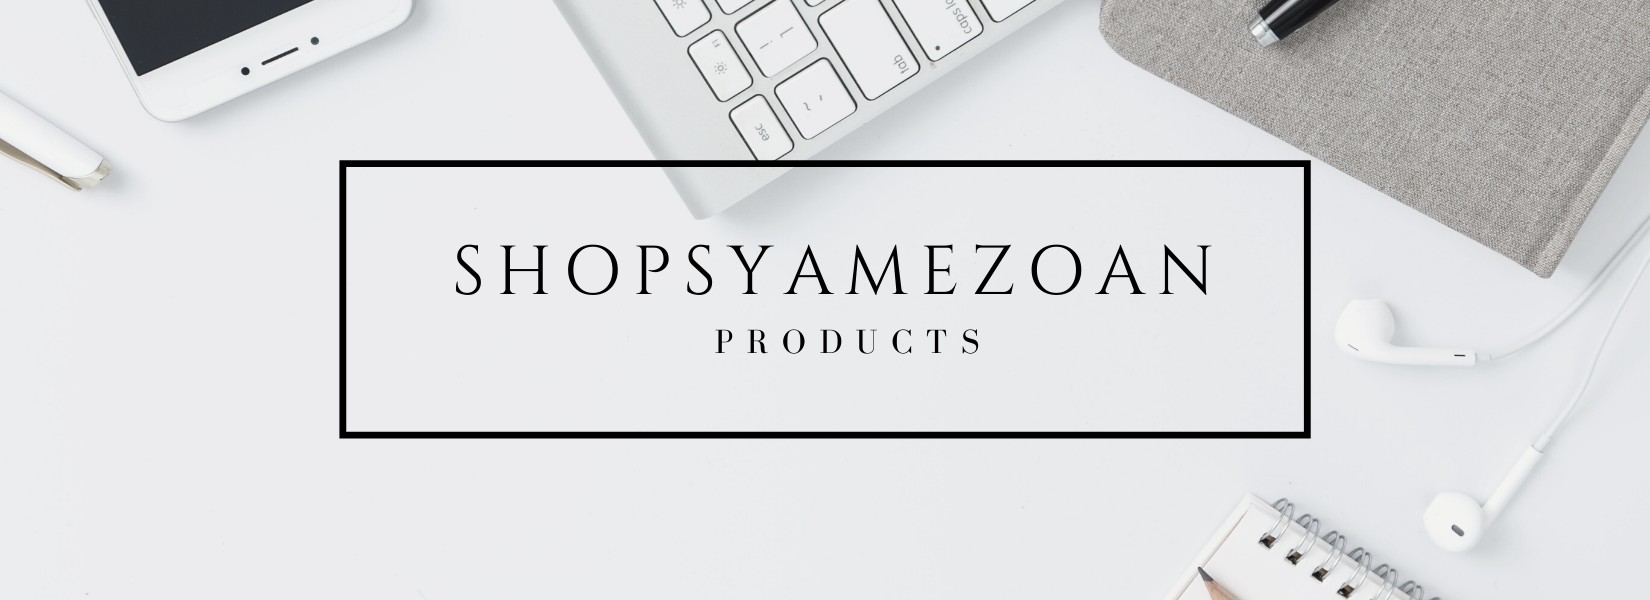 Shopsyamezoan Cover Image